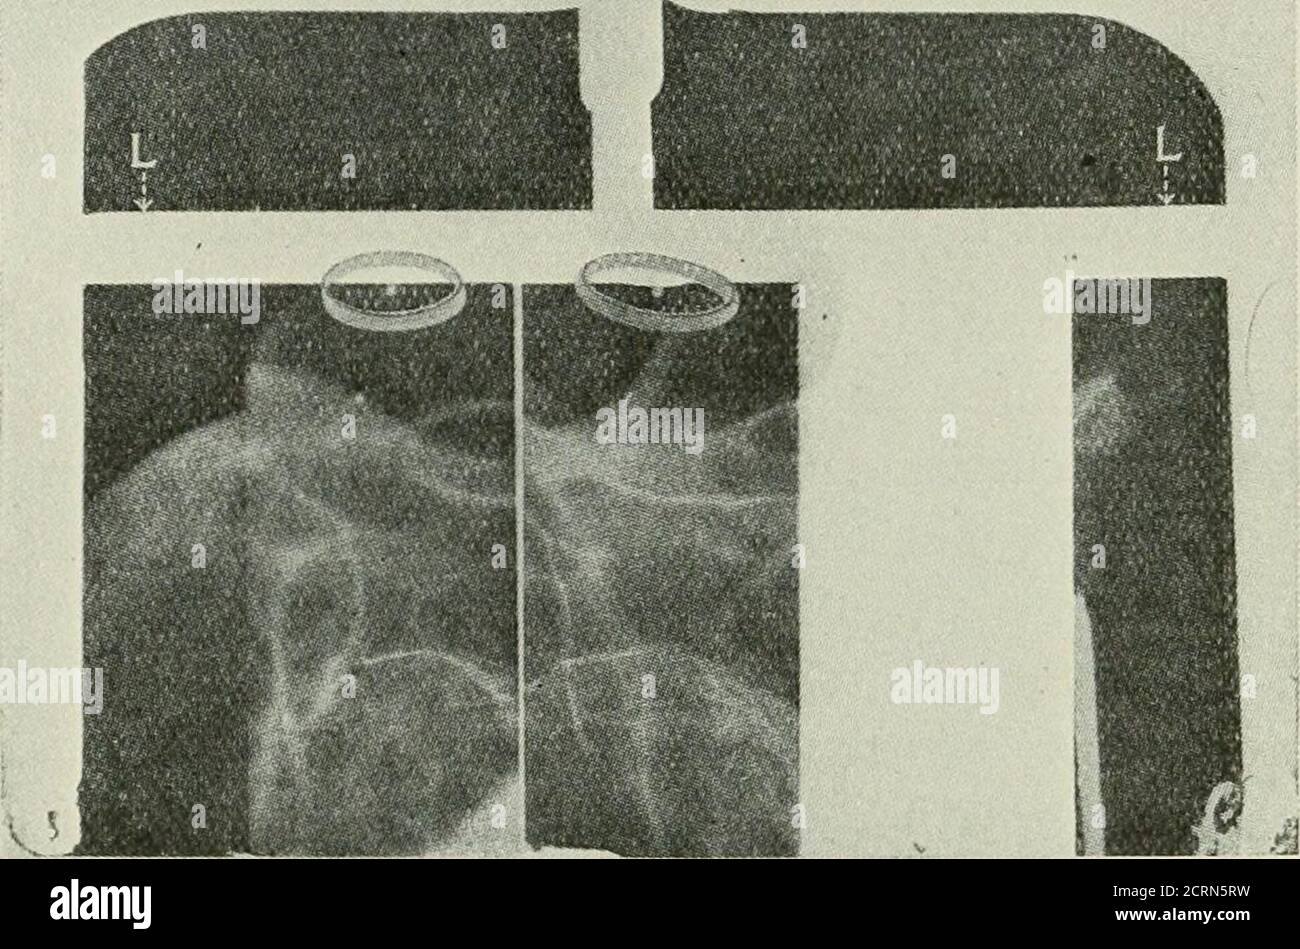 . Radiografia e radioterapeutica . M^: FK;. 155.-diagramma del sjsteni ottico.(Dr A. W. Salnioud.) Y, immagine verticale della palla come visto da occhio inleso ; M, specchio ; X, occhio ferito ; Y, occhio inleso. 184 RADIOGRAFIA il tubo, portando con sé l'indicatore e la piastra, viene spostato ad una distanza definita verso i piedi del paziente e la seconda esposizione in una sola volta sulla porzione precedentemente protetta della piastra. Fig. 156.-Facsimile riproduzione di doppio radiogramma dell'occhio, showingposition della palla indicatrice in relazione al corpo estraneo in due piani. È clamidato che la protezione efficiente t Foto Stock